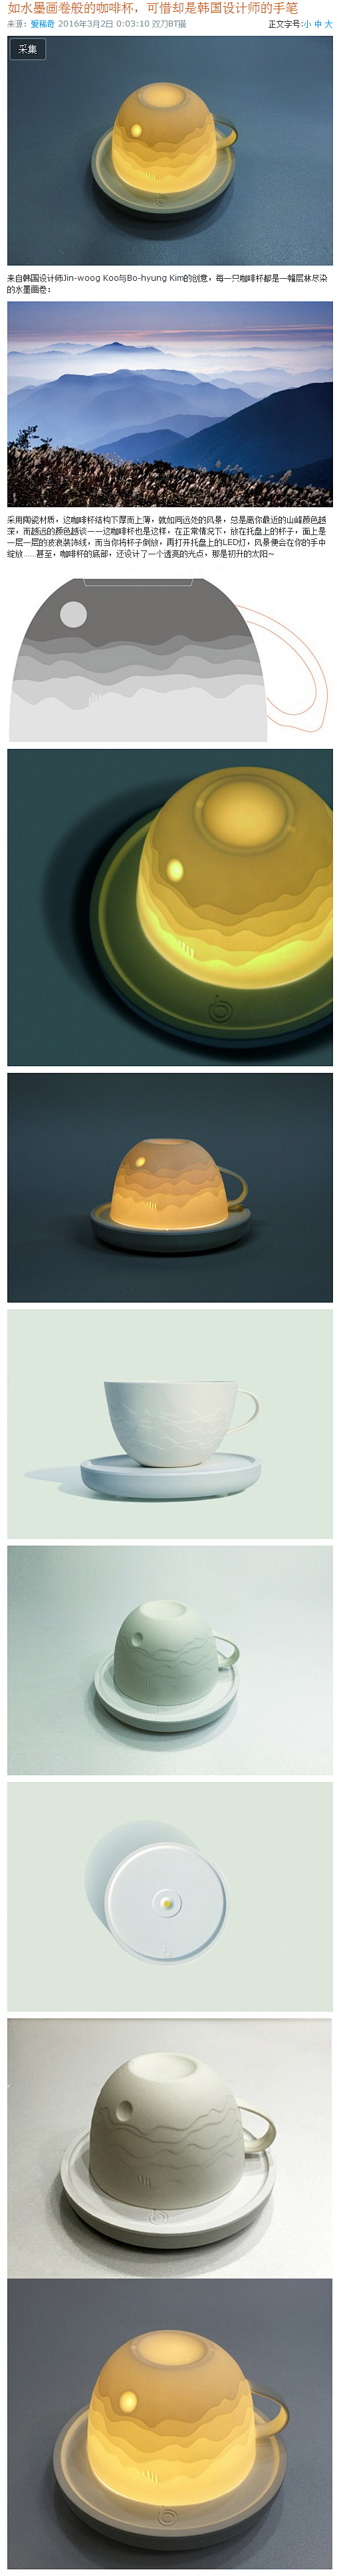 如水墨画卷般的咖啡杯，可惜却是韩国设计师...